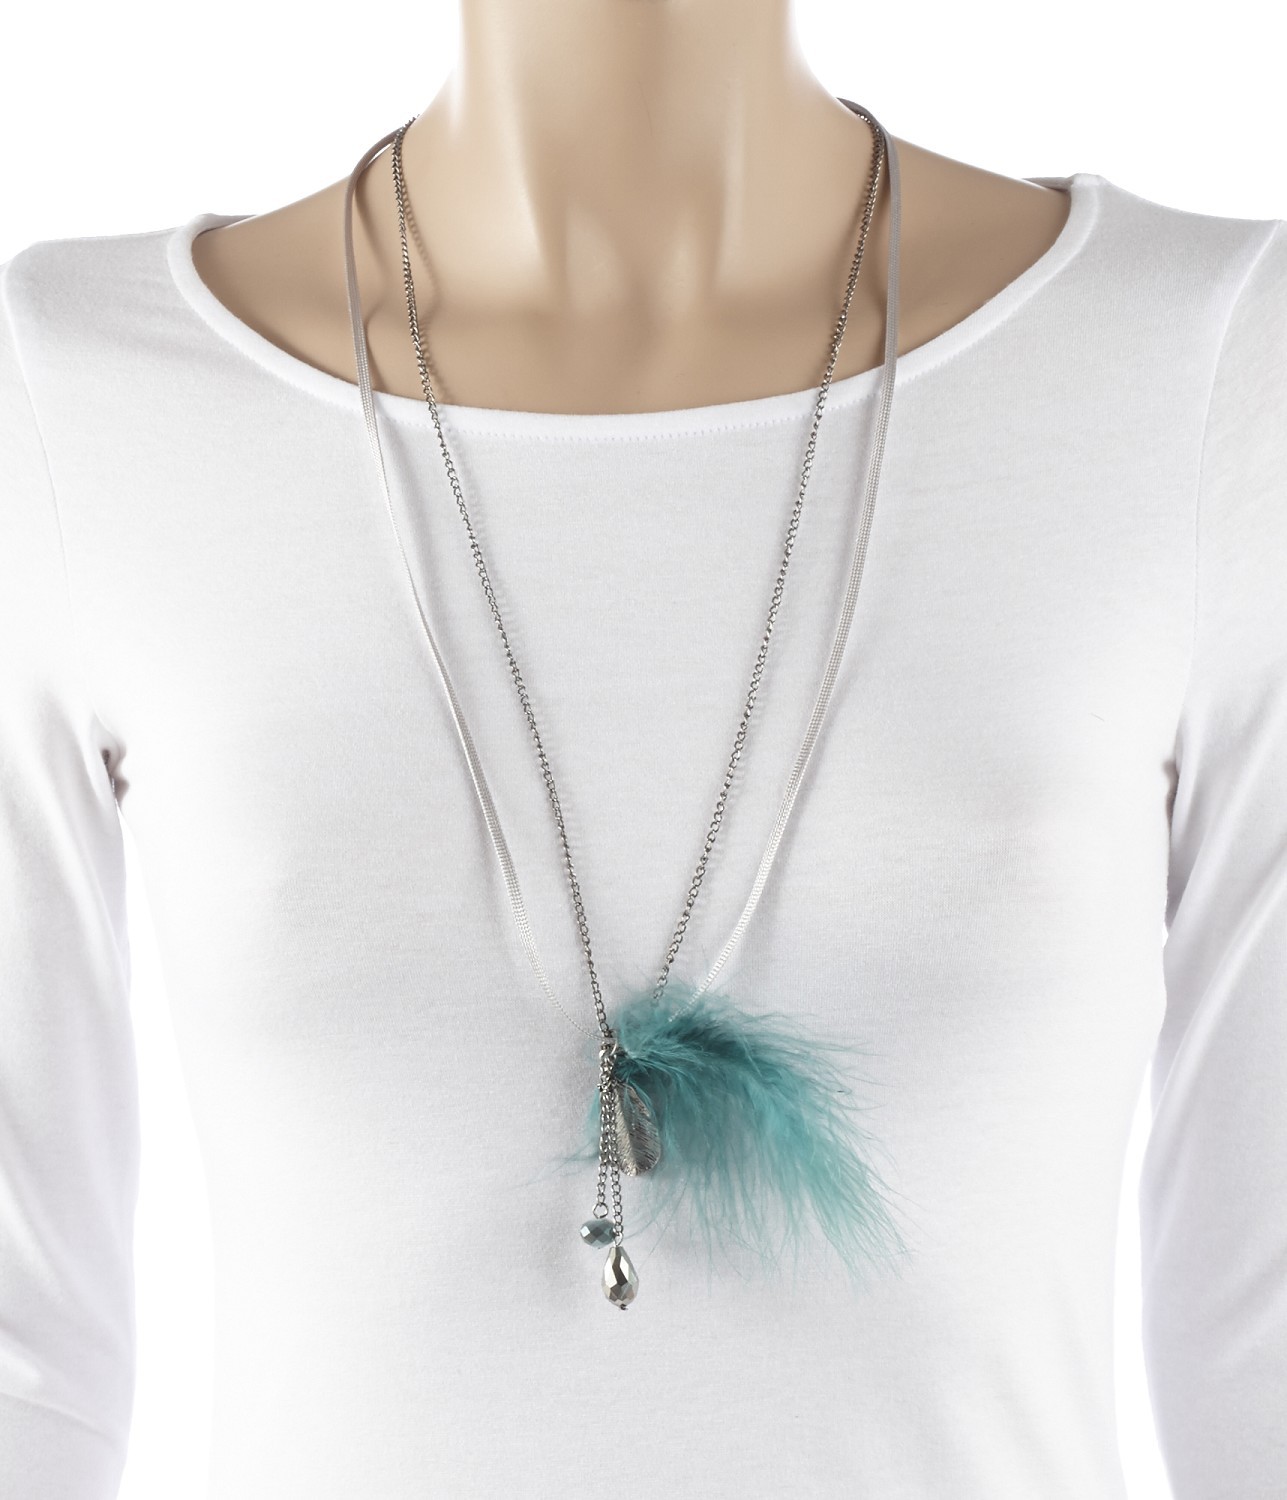 Camaieu kék márkás bizsu medálos nyaklánc 2013.8.10 fotója